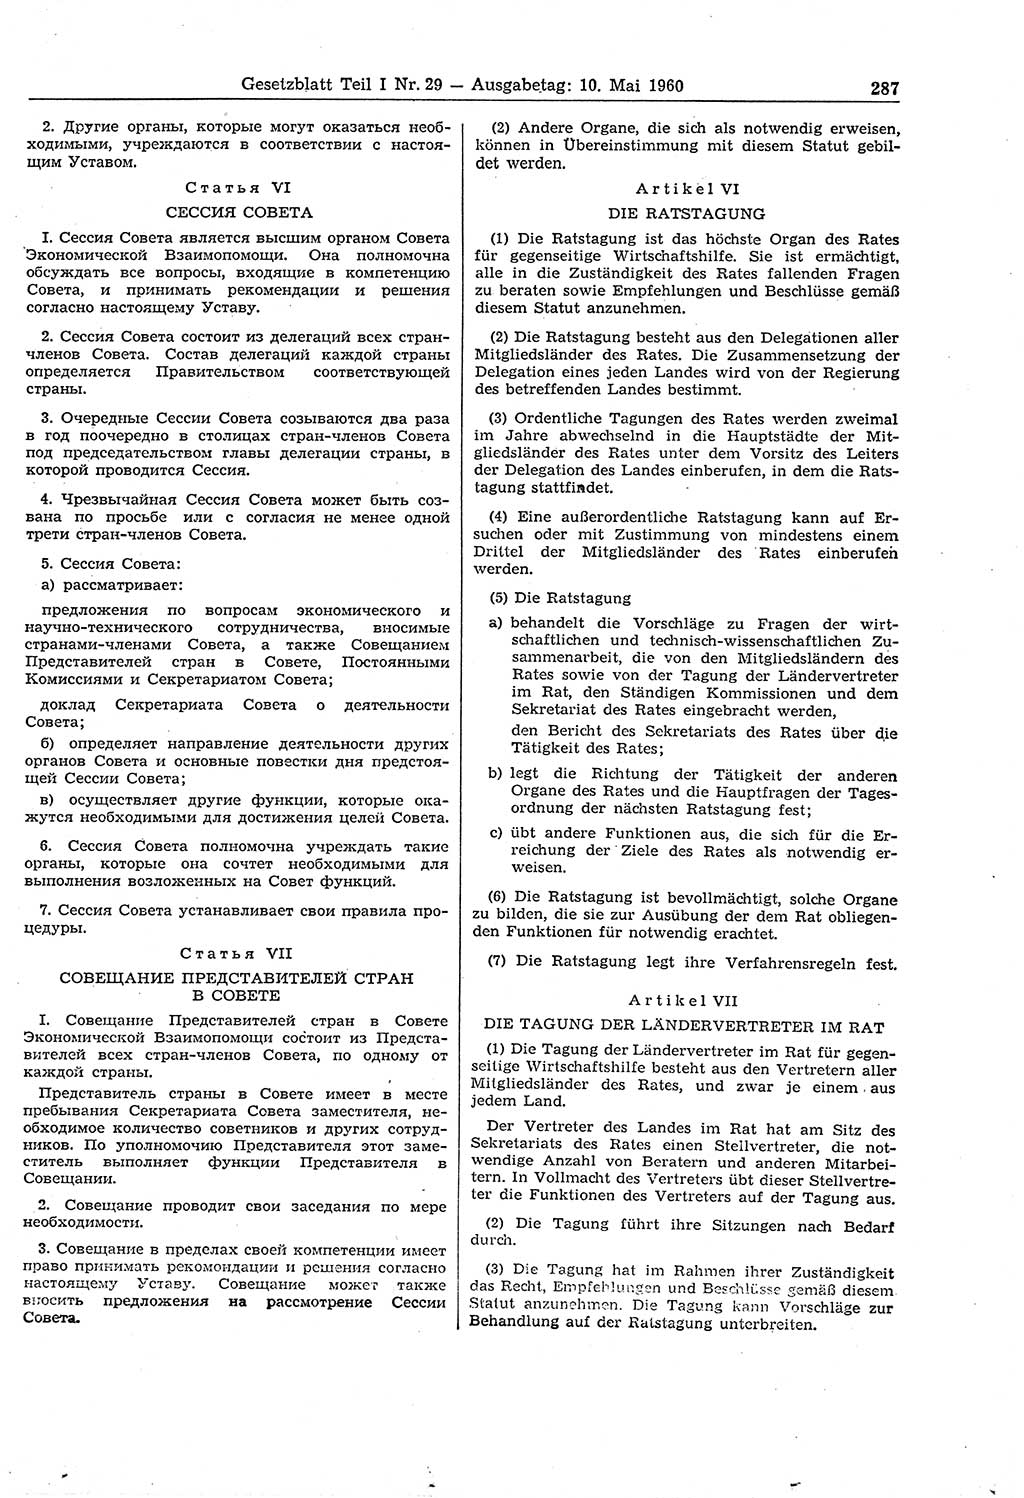 Gesetzblatt (GBl.) der Deutschen Demokratischen Republik (DDR) Teil Ⅰ 1960, Seite 287 (GBl. DDR Ⅰ 1960, S. 287)